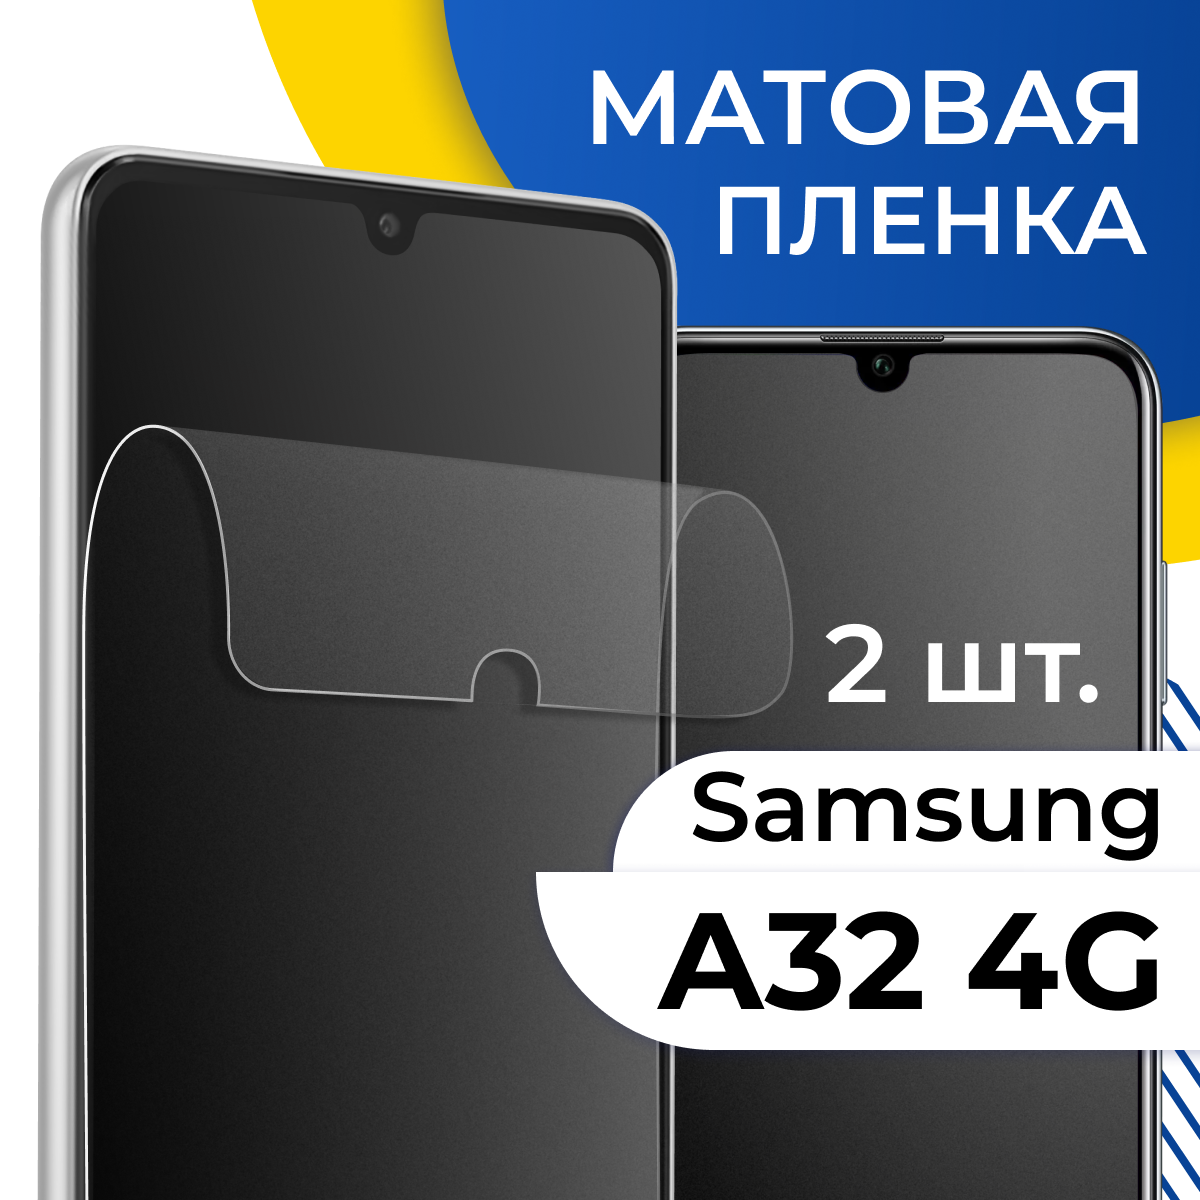 Матовая гидрогелевая пленка для телефона Samsung Galaxy A32 4G / Самовосстанавливающаяся защитная пленка на смартфон Самсунг Галакси А32 4Г